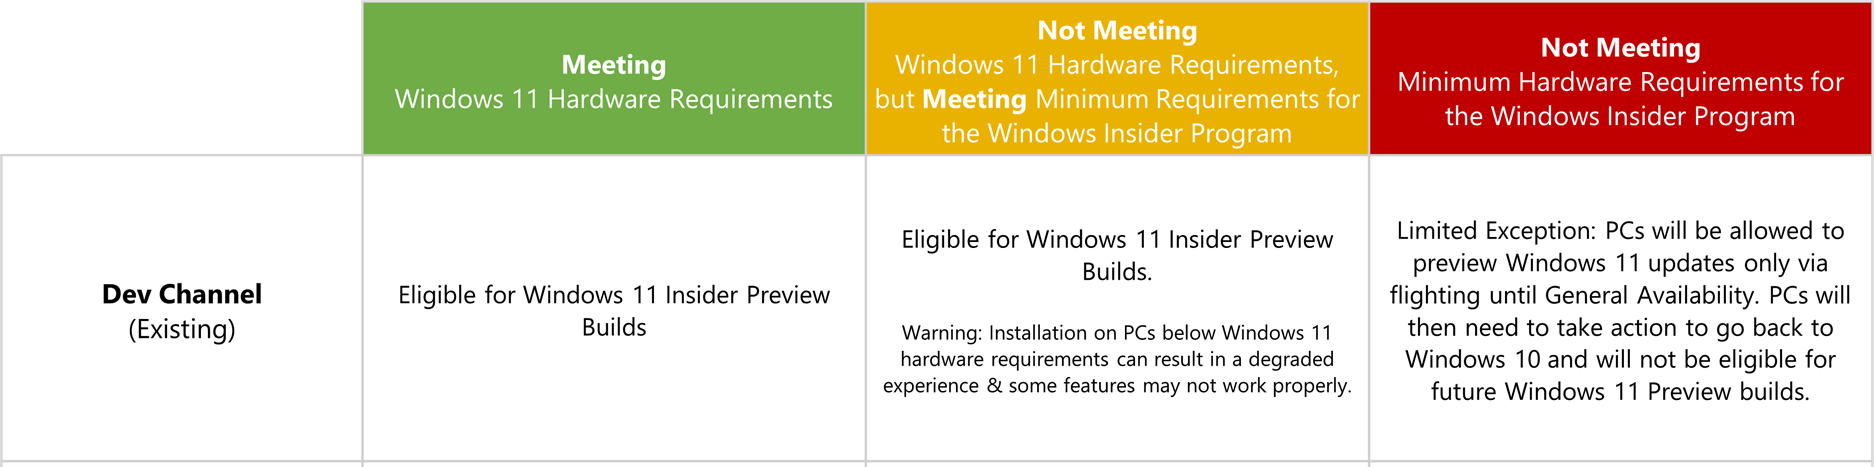 开发人员频道中概述 Windows 11 硬件要求的图表。